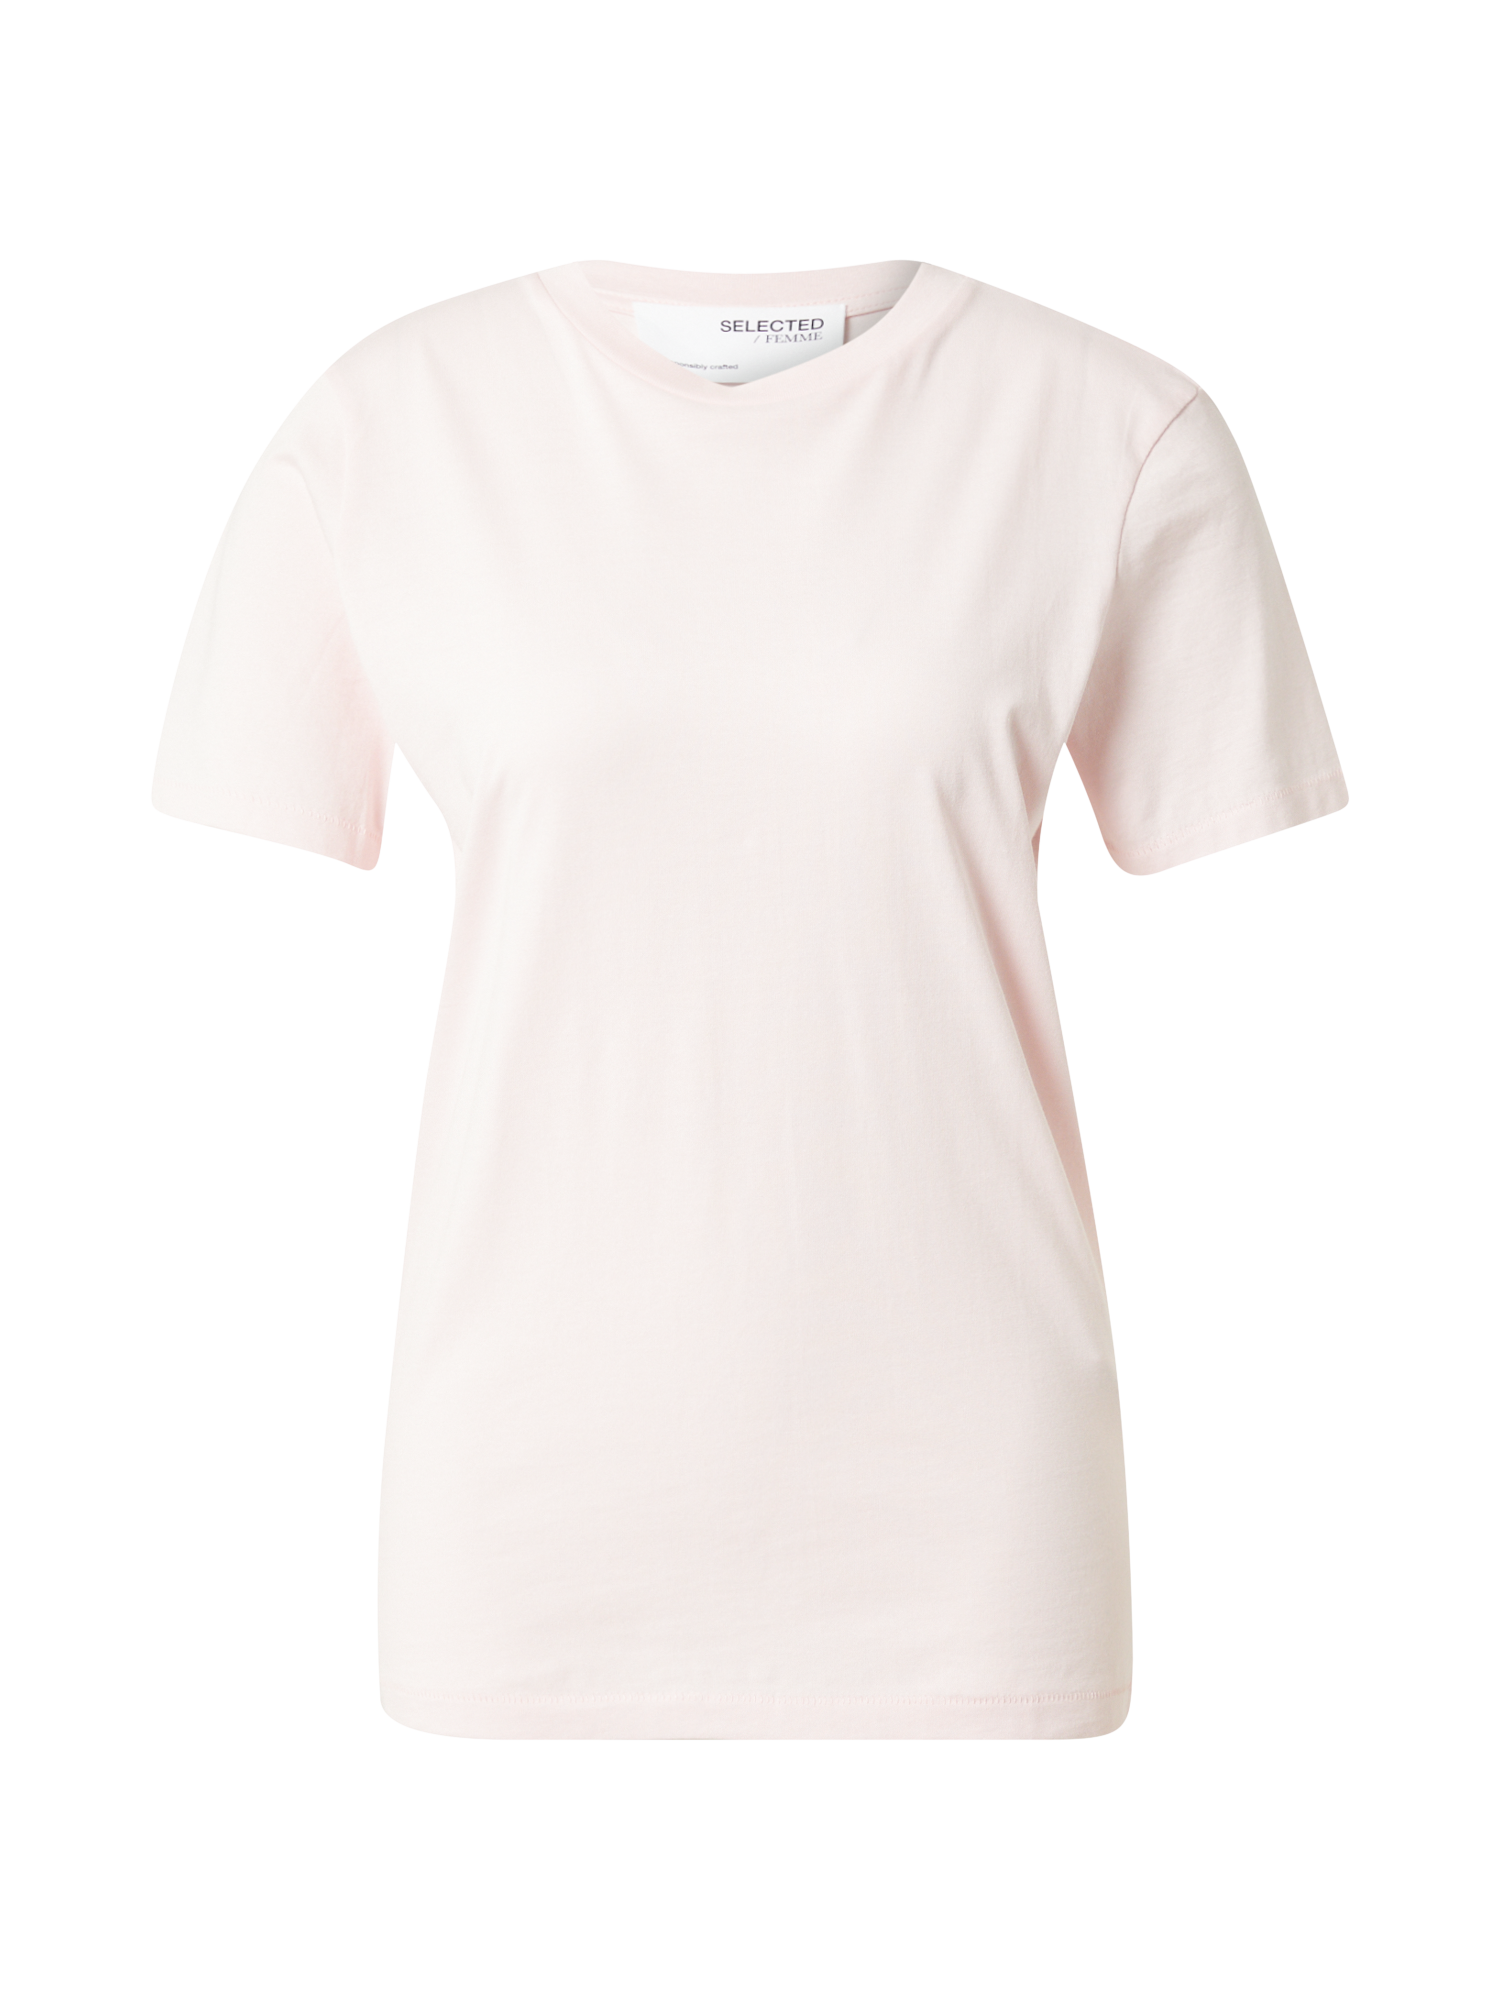 Odzież Kobiety SELECTED FEMME Koszulka w kolorze Pastelowy Różm 